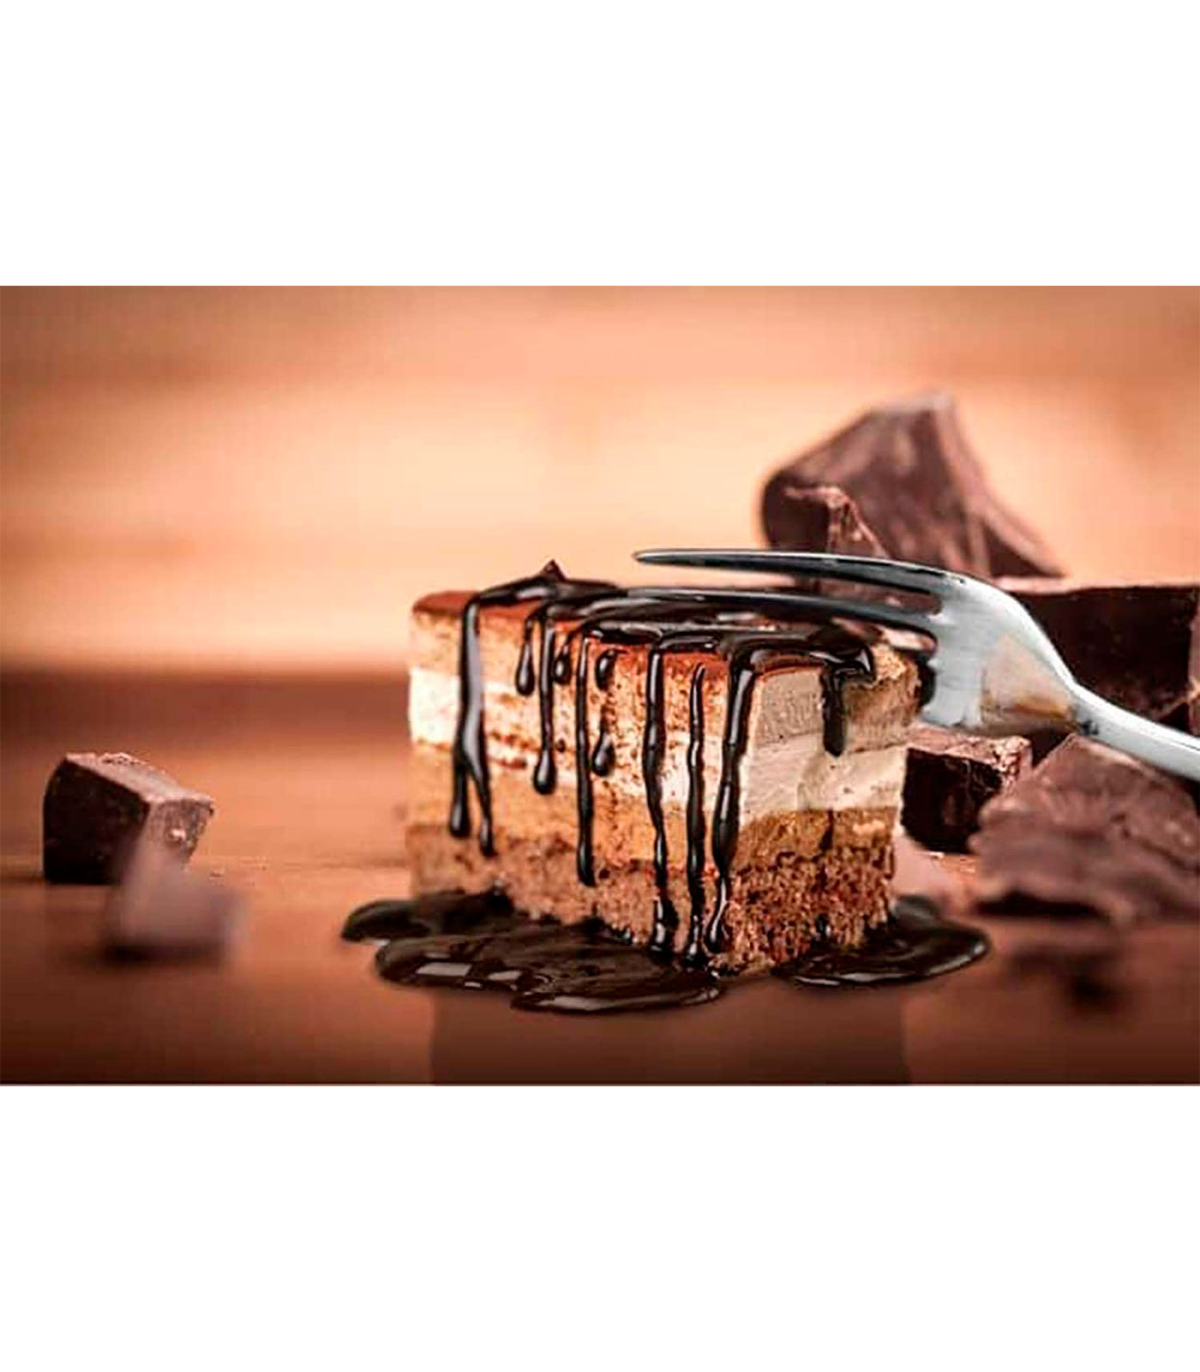 Tradineur - Set de 6 cucharas para café de acero inoxidable, cucharillas  clásicas para postre, helado, tarta, té, infusiones, 13